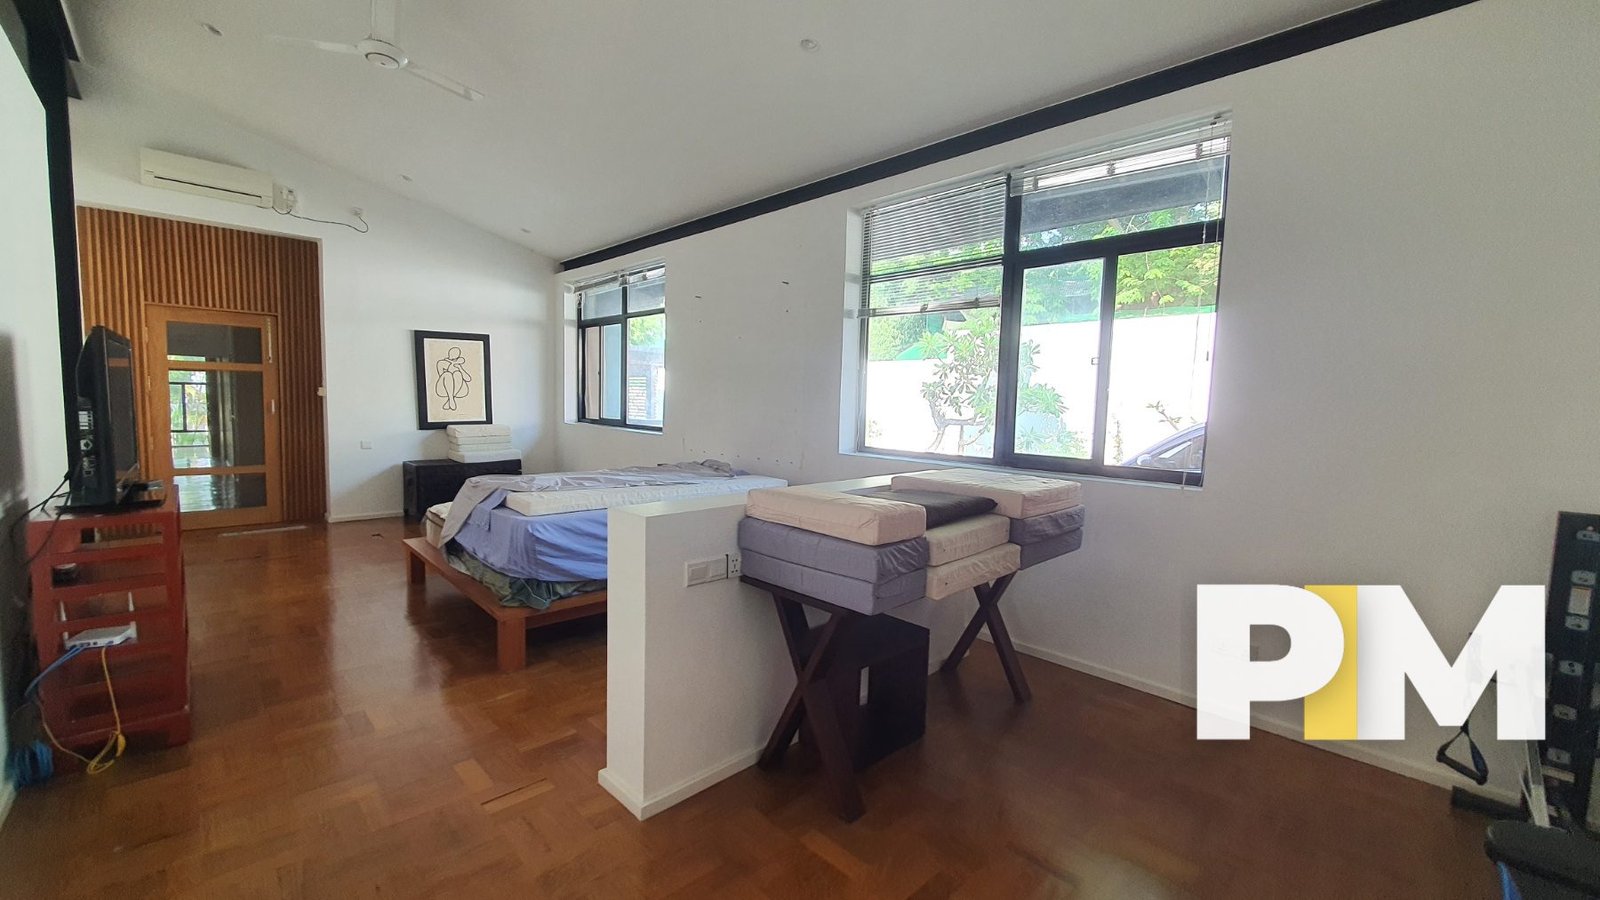 Bedroom wtih natural light - Real Estate in Myanmar